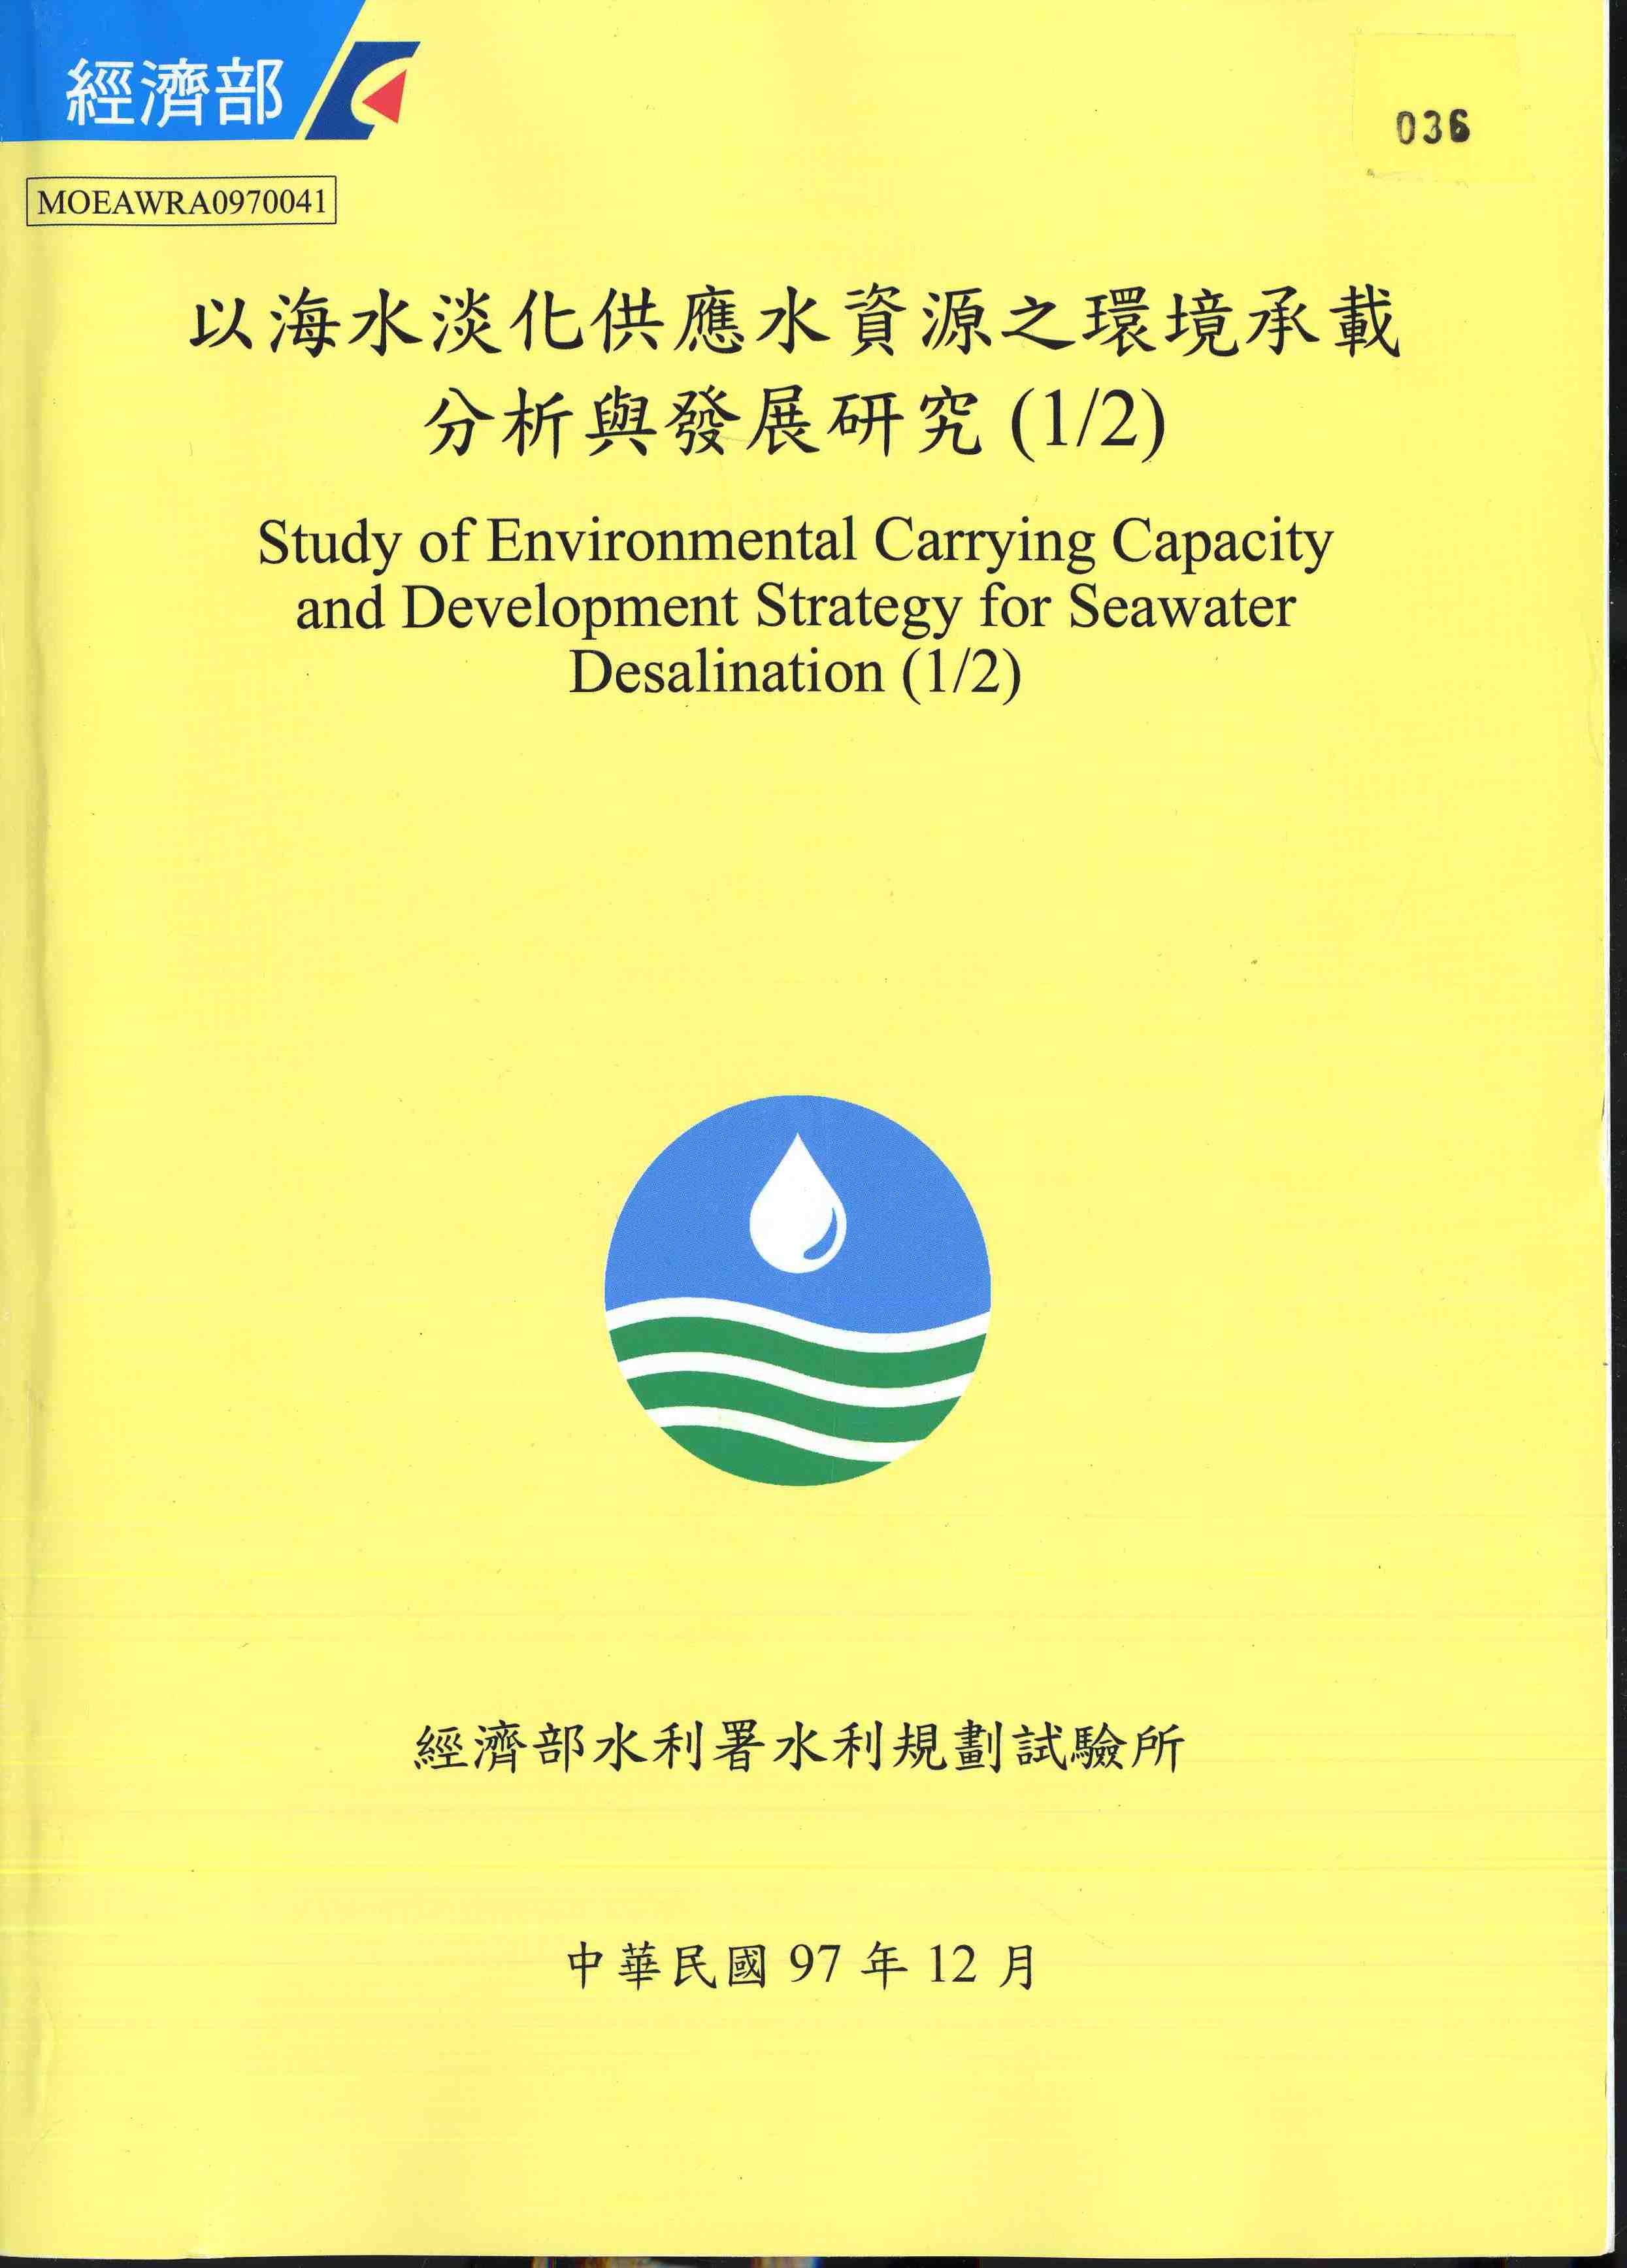 以海水淡化供應水資源之環境承載分析與發展研究(1/2)